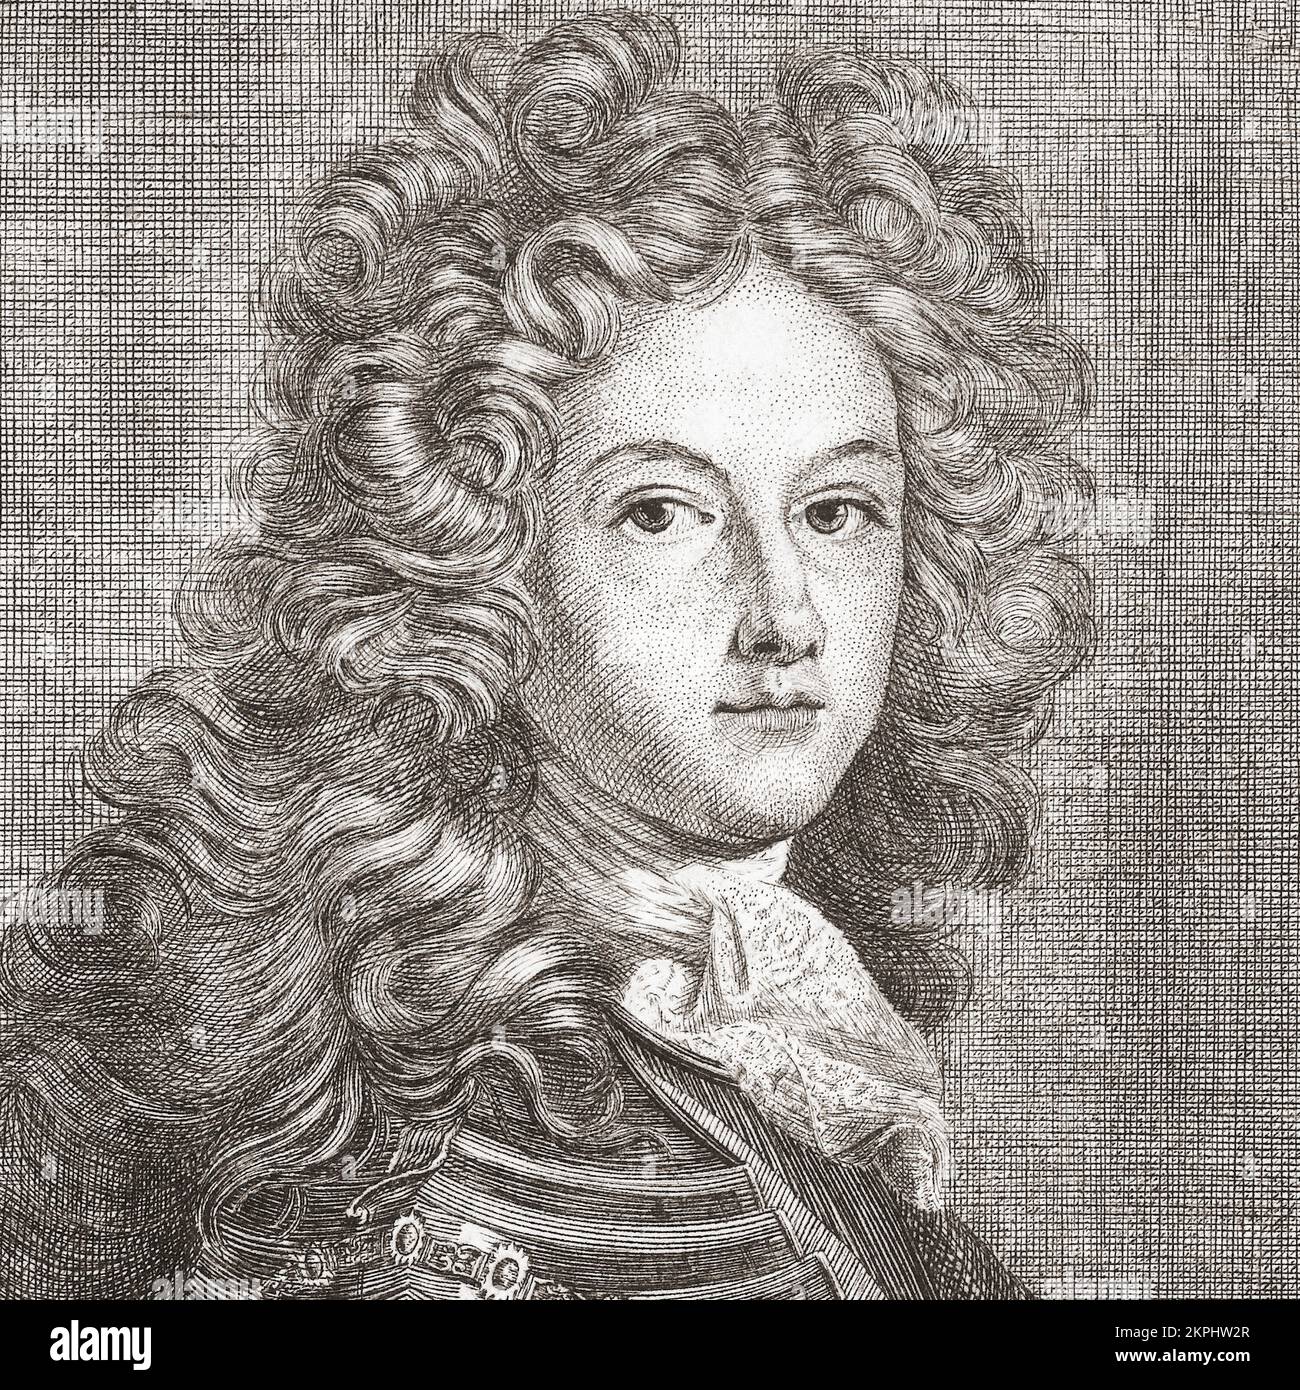 Felipe V, 1683 - 1746. Rey de España, 1700 - 14 de enero de 1724 y de nuevo desde el 6 de septiembre de 1724 - 1746. Después de una pintura de Joseph Vivien. Foto de stock